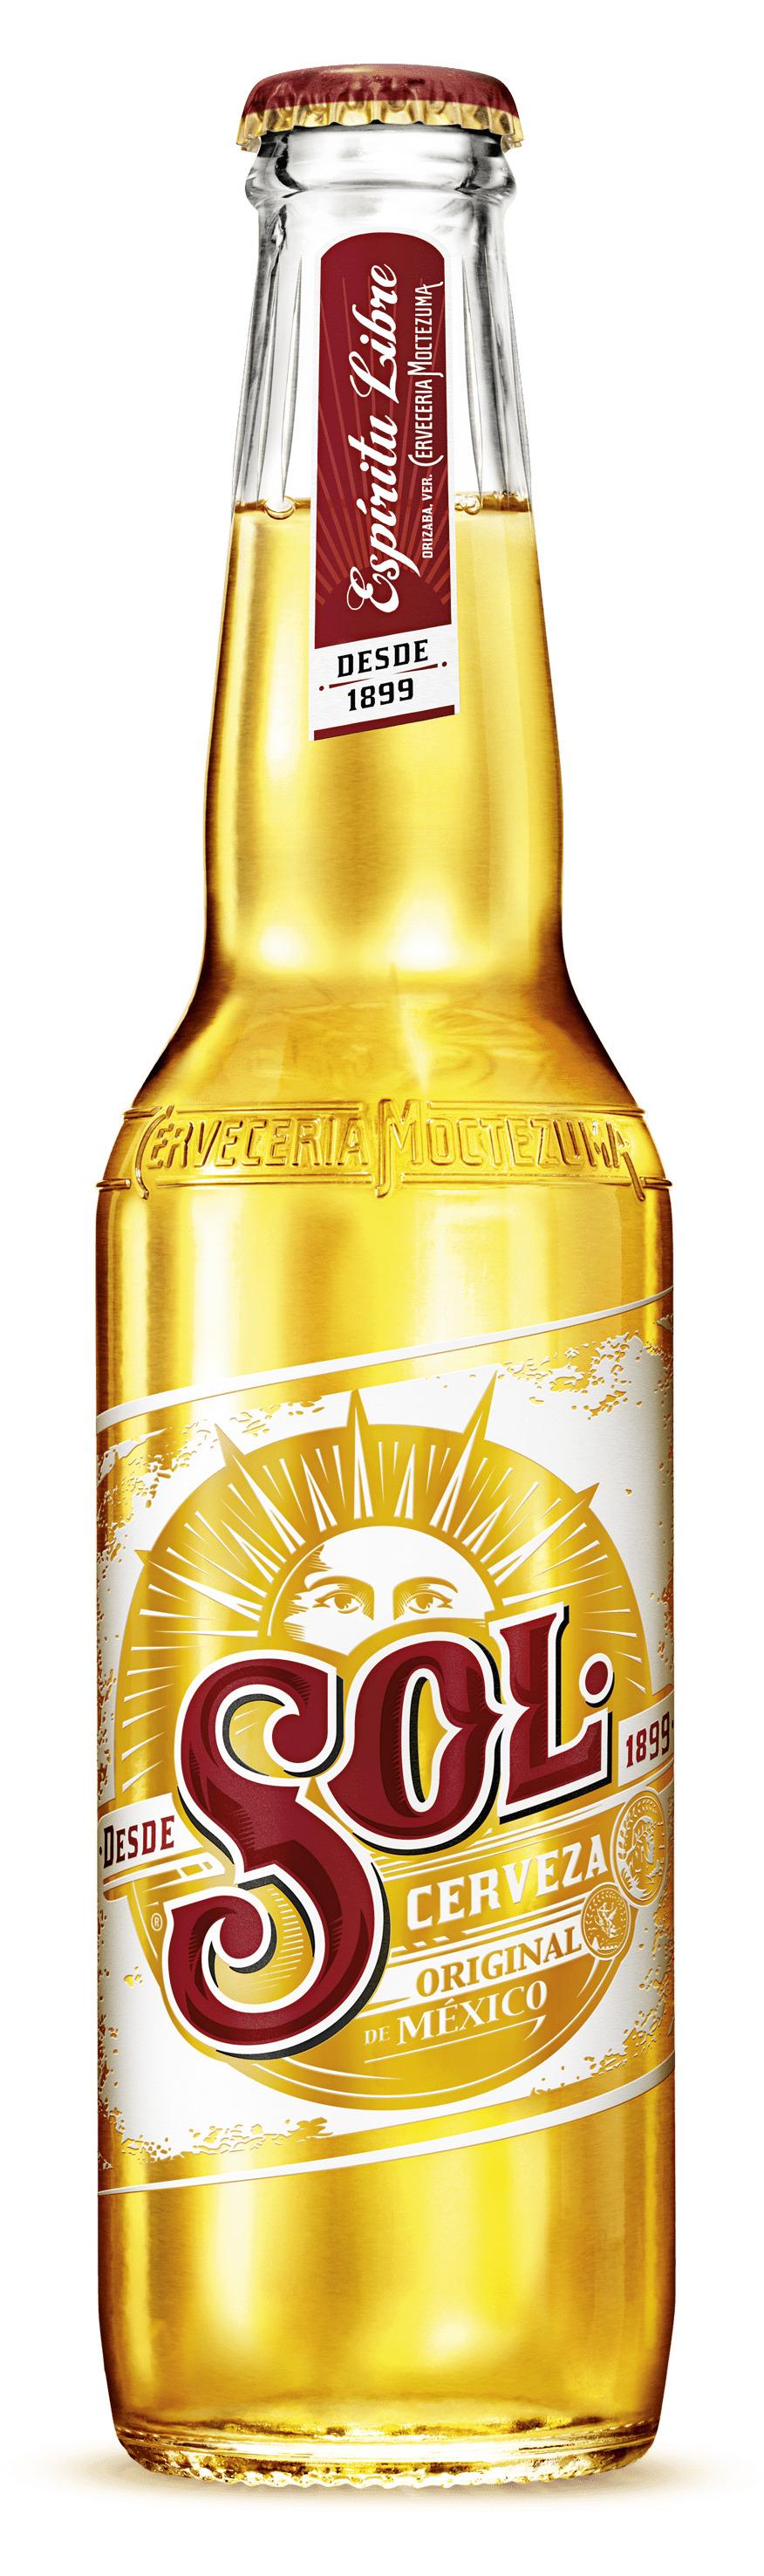 Sol Beer Bottle png transparent